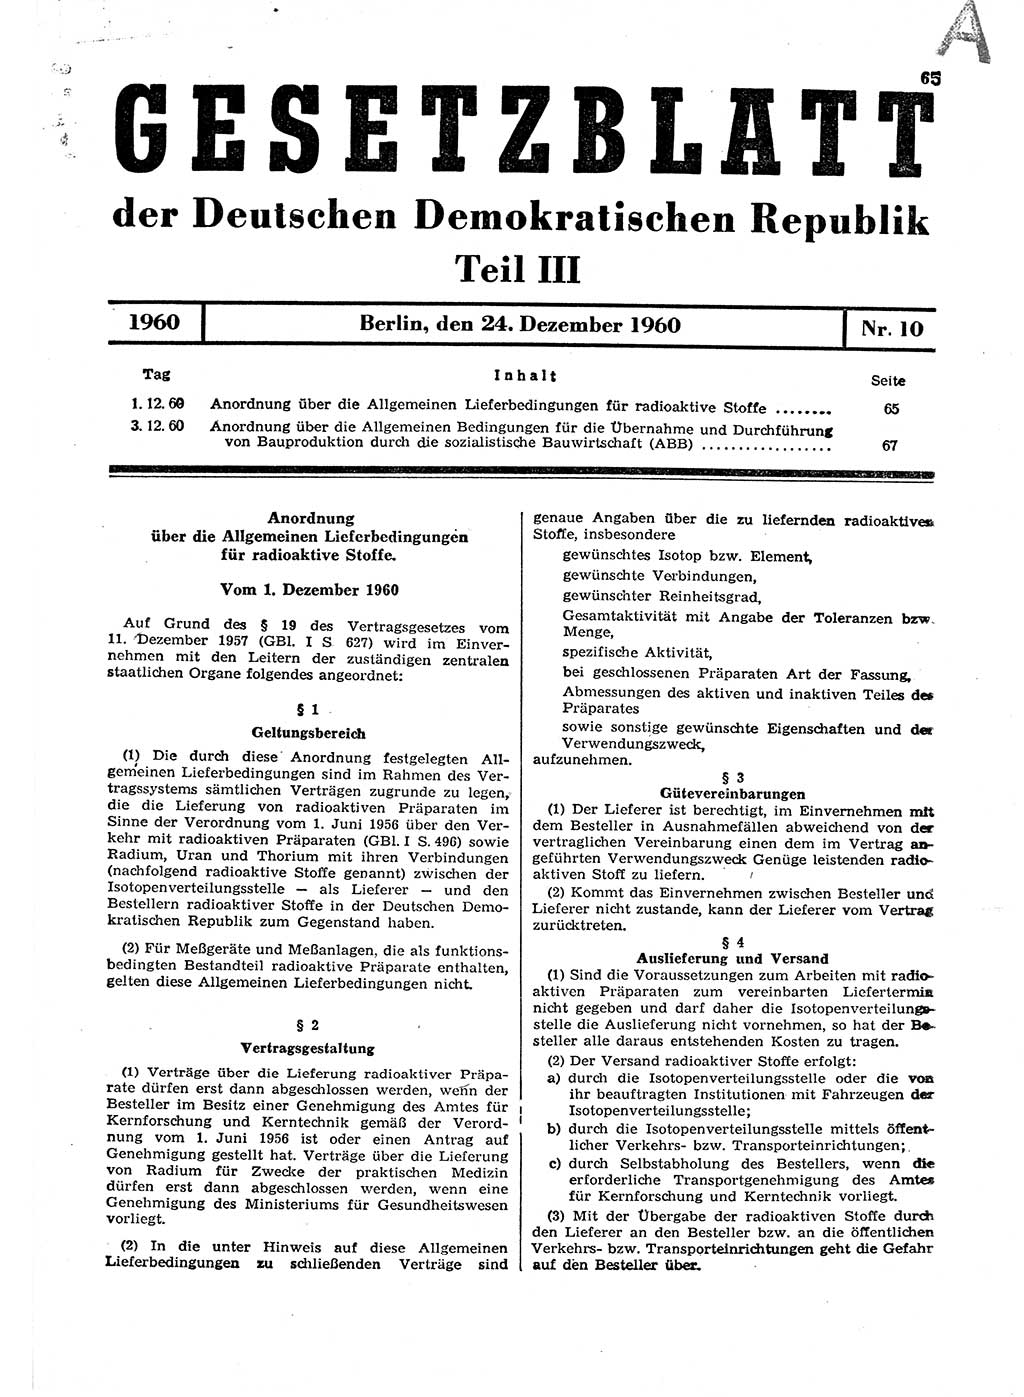 Gesetzblatt (GBl.) der Deutschen Demokratischen Republik (DDR) Teil ⅠⅠⅠ 1960, Seite 65 (GBl. DDR ⅠⅠⅠ 1960, S. 65)